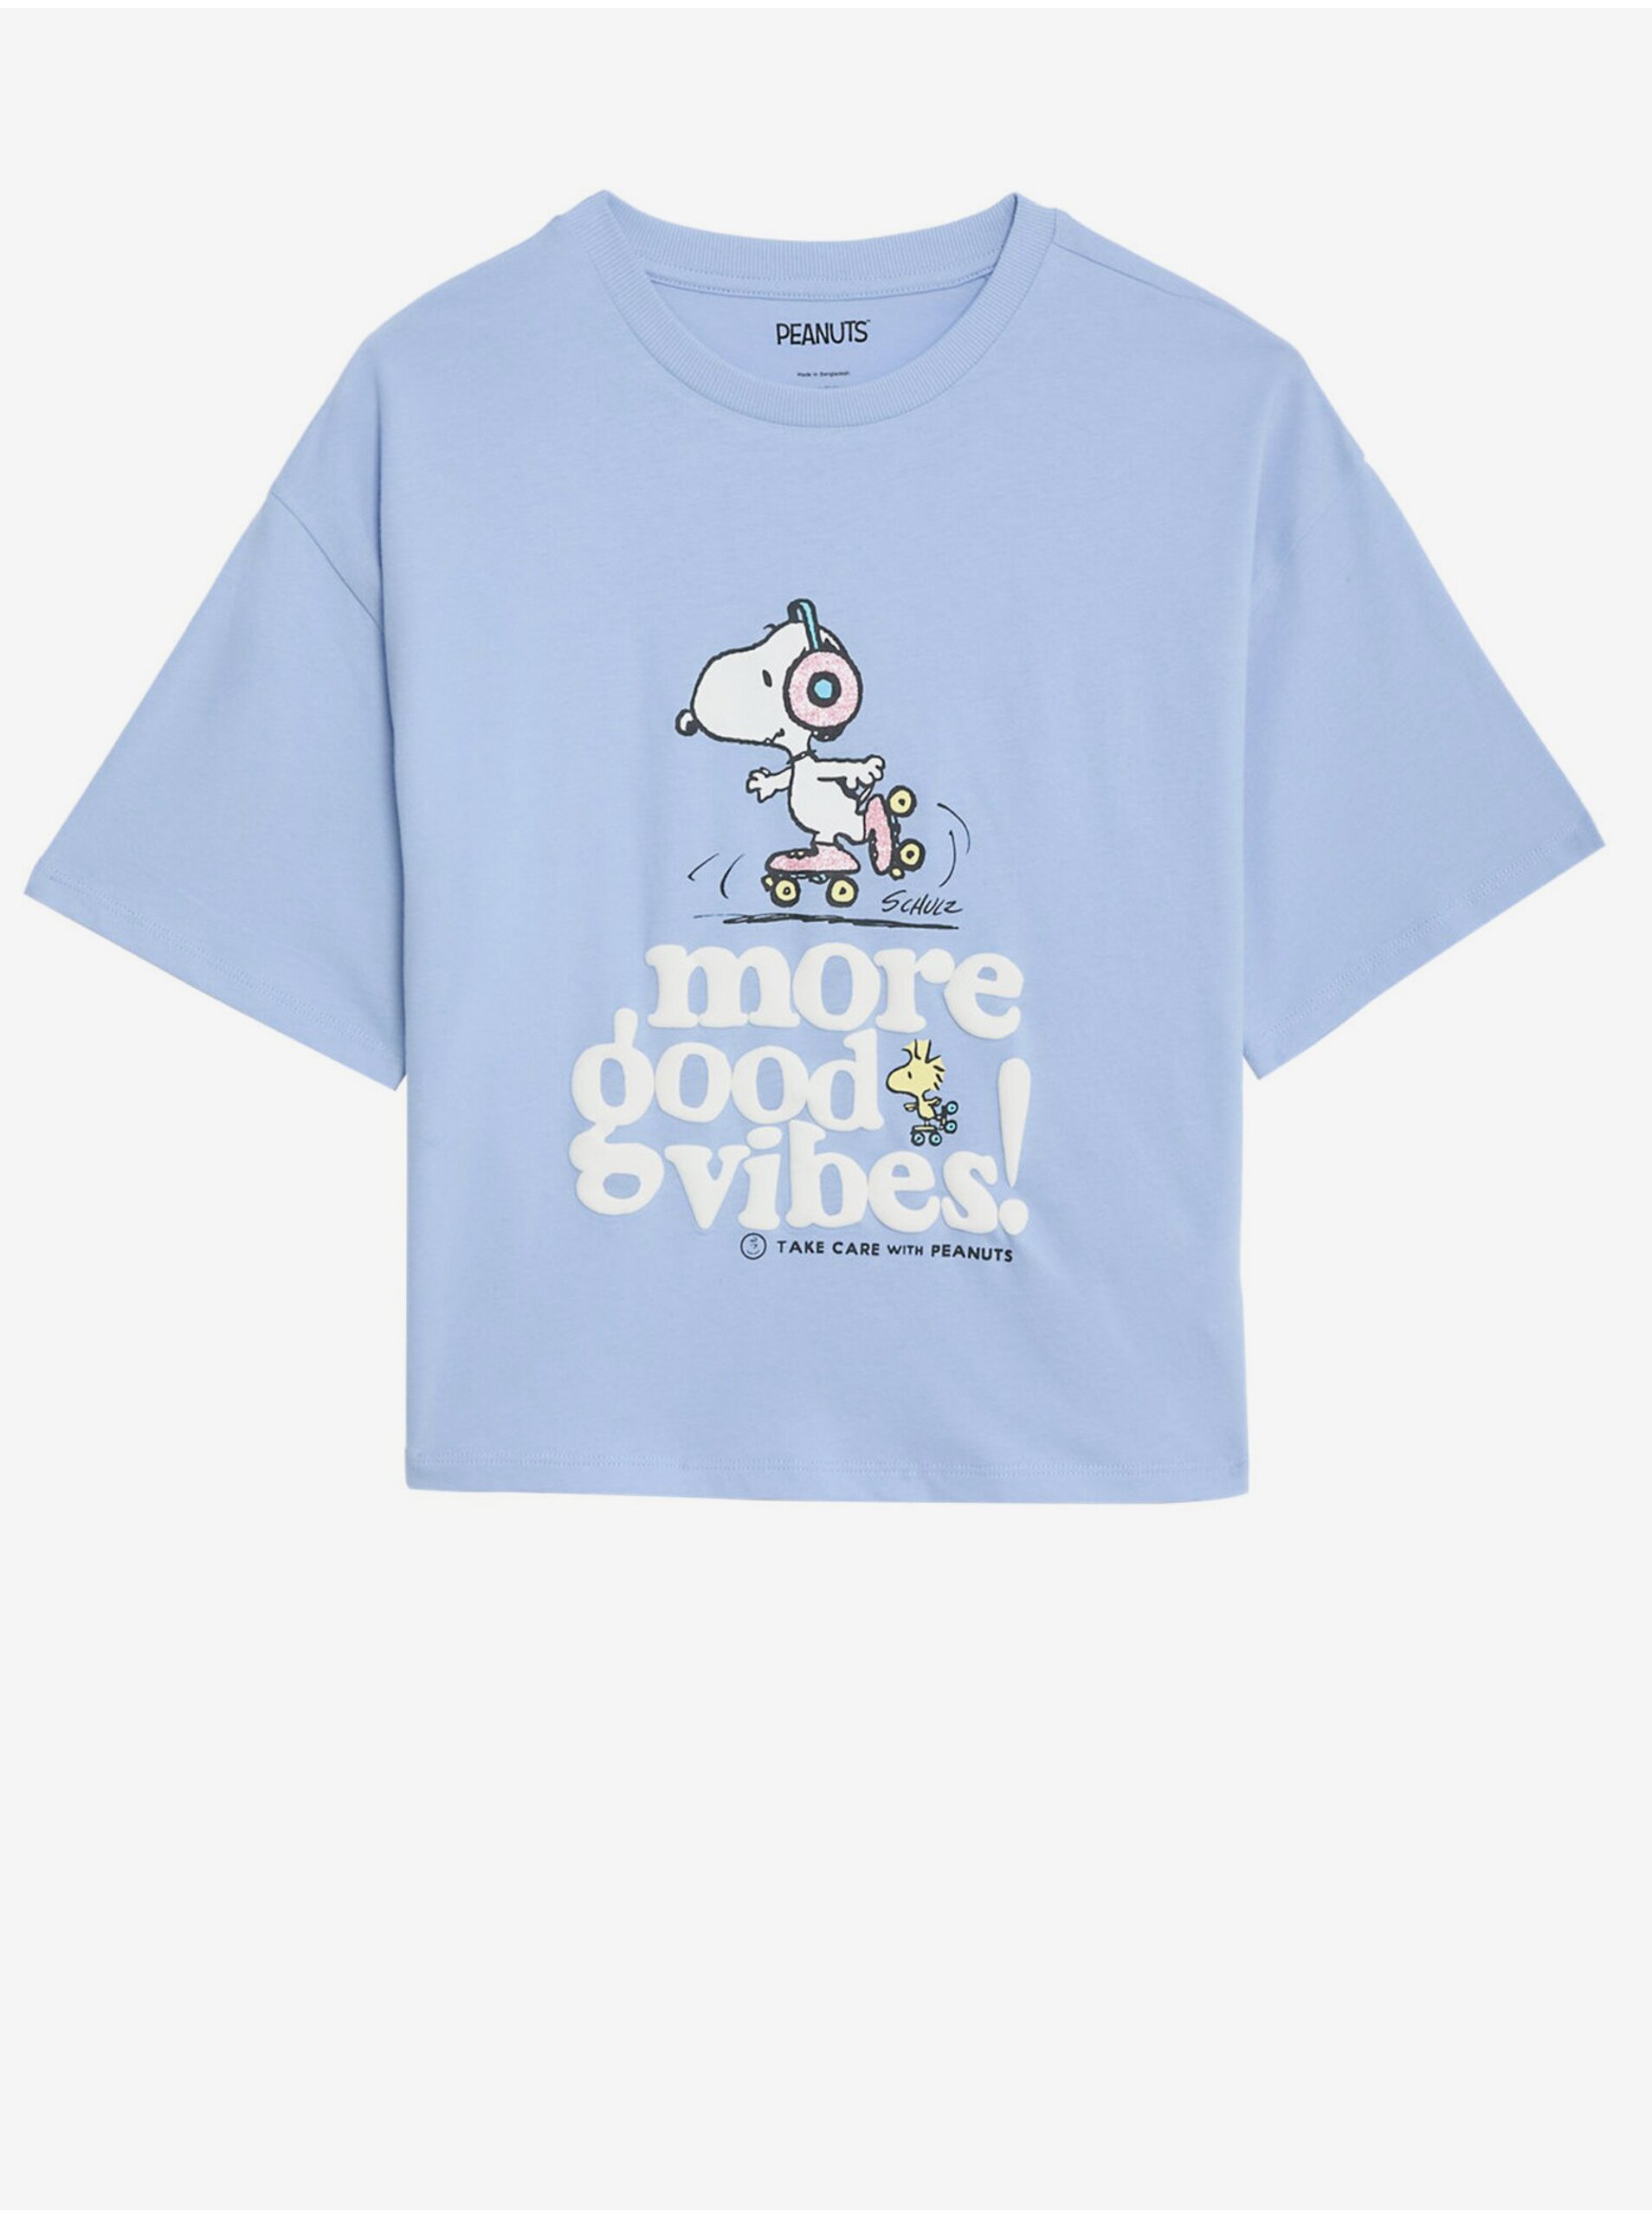 Lacno Svetlomodré dievčenské tričko s motívom Marks & Spencer Snoopy™